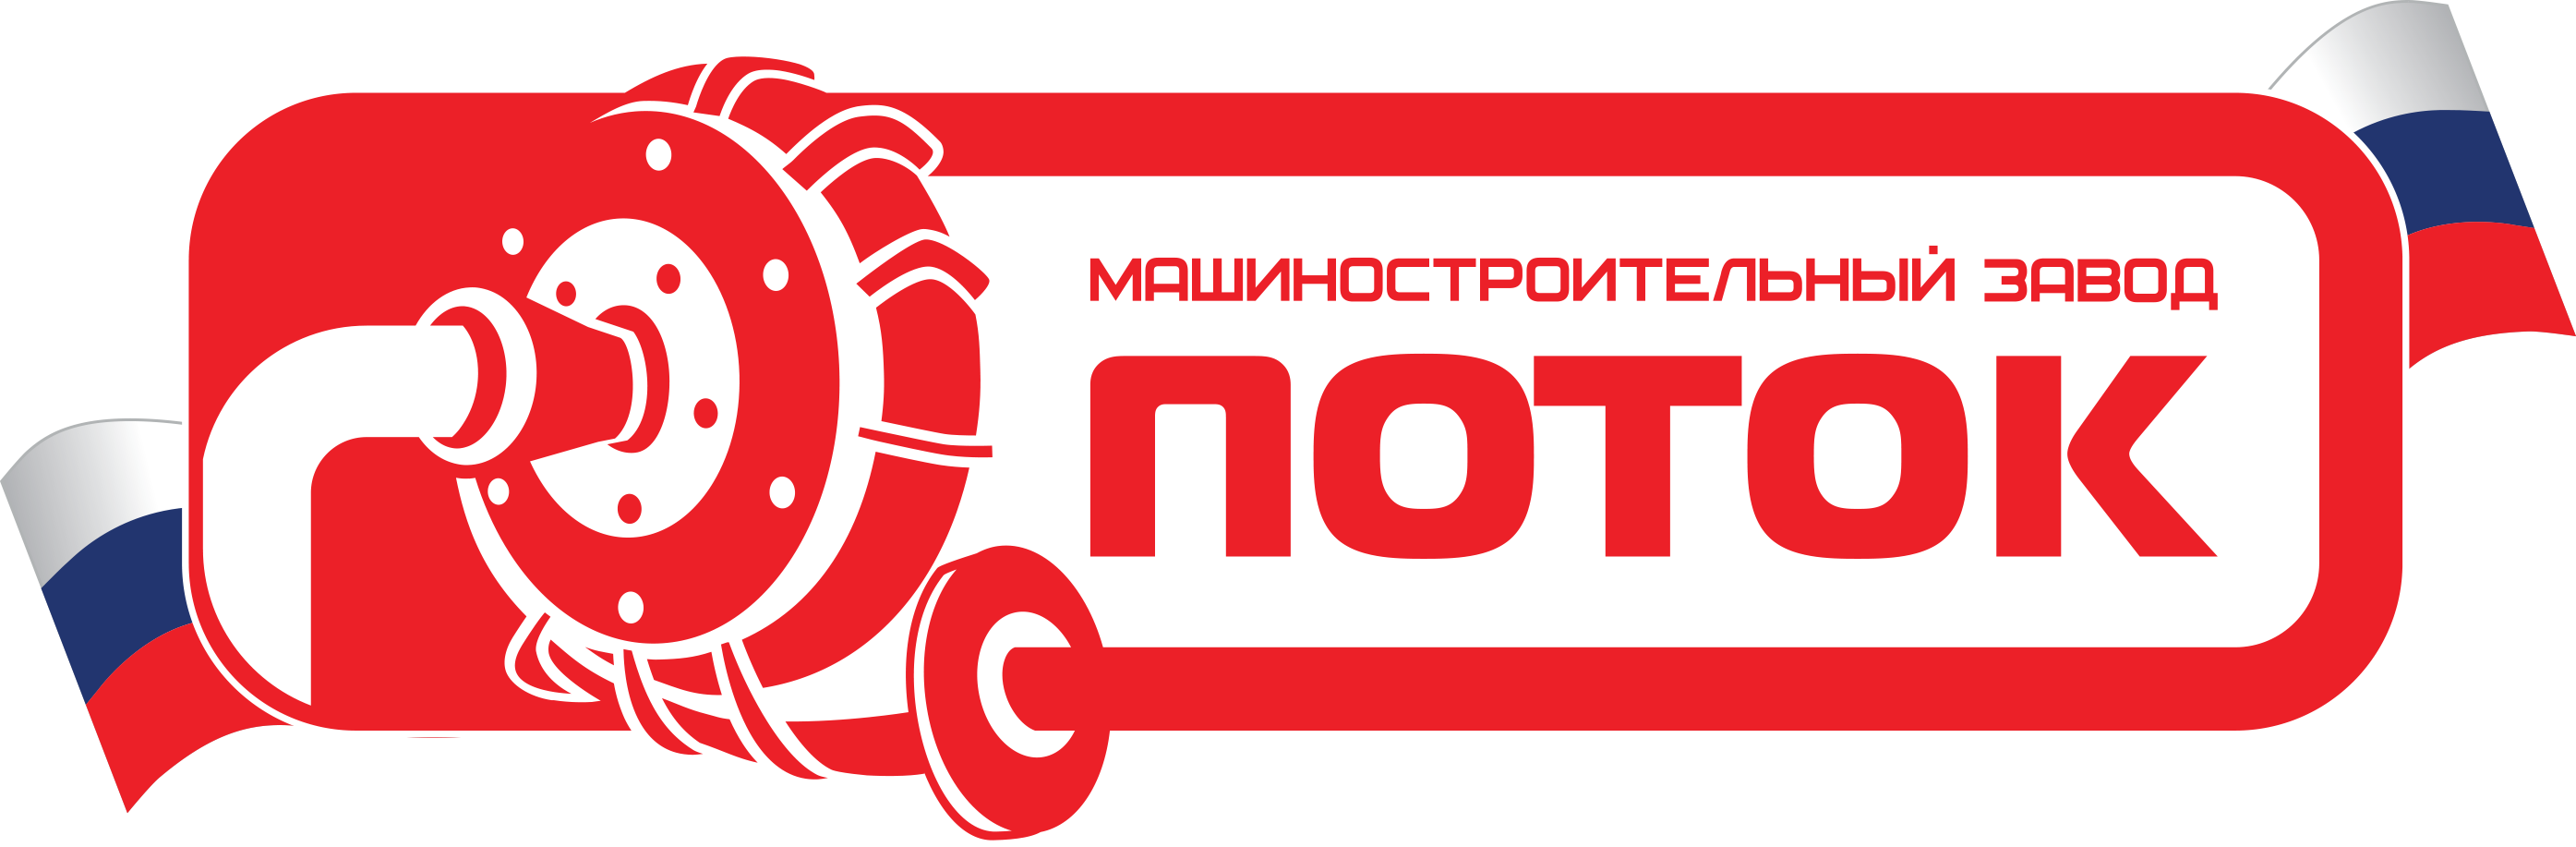 mzpotok-logo-transparent.png